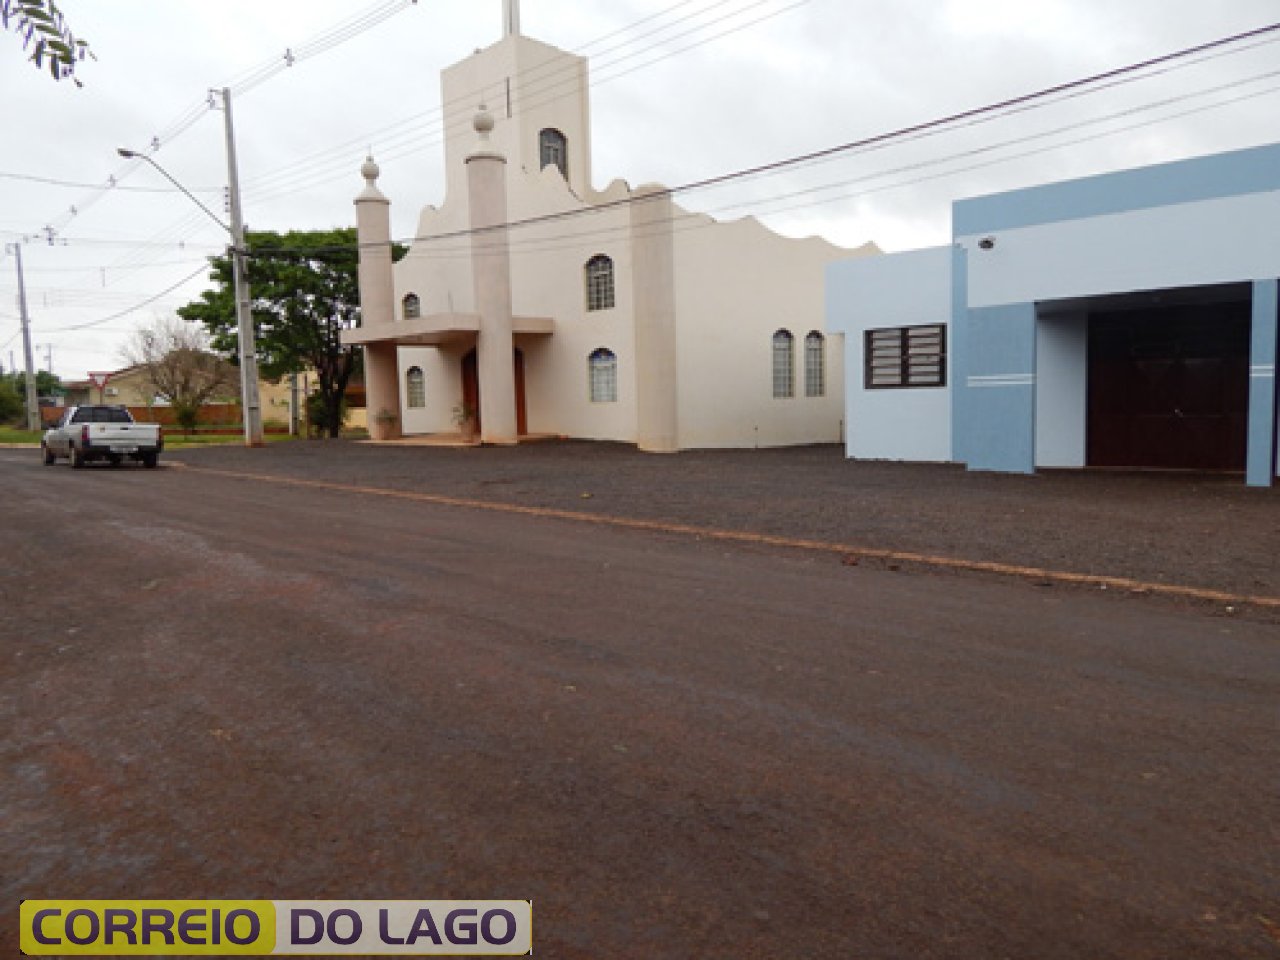 Atual Igreja Católica do Bairro São Luis. Foto/2014.